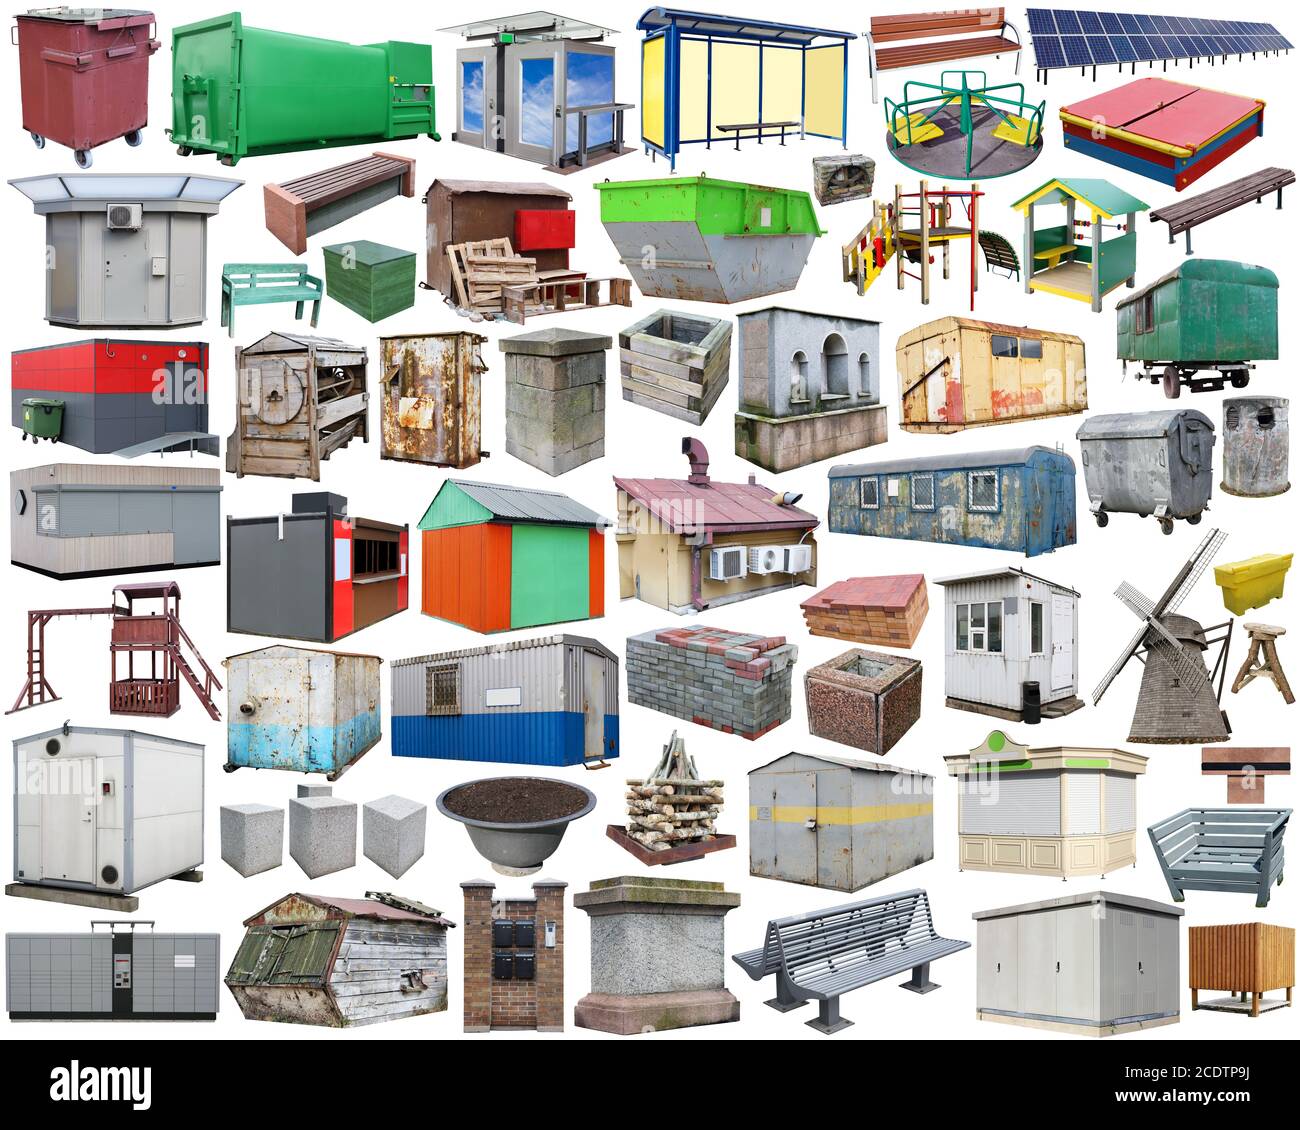 Kleine Industrieobjekte auf Straßen der Stadt - Bänke, Stände, Abfalleimer und so weiter. Großes isoliertes Set. Stockfoto